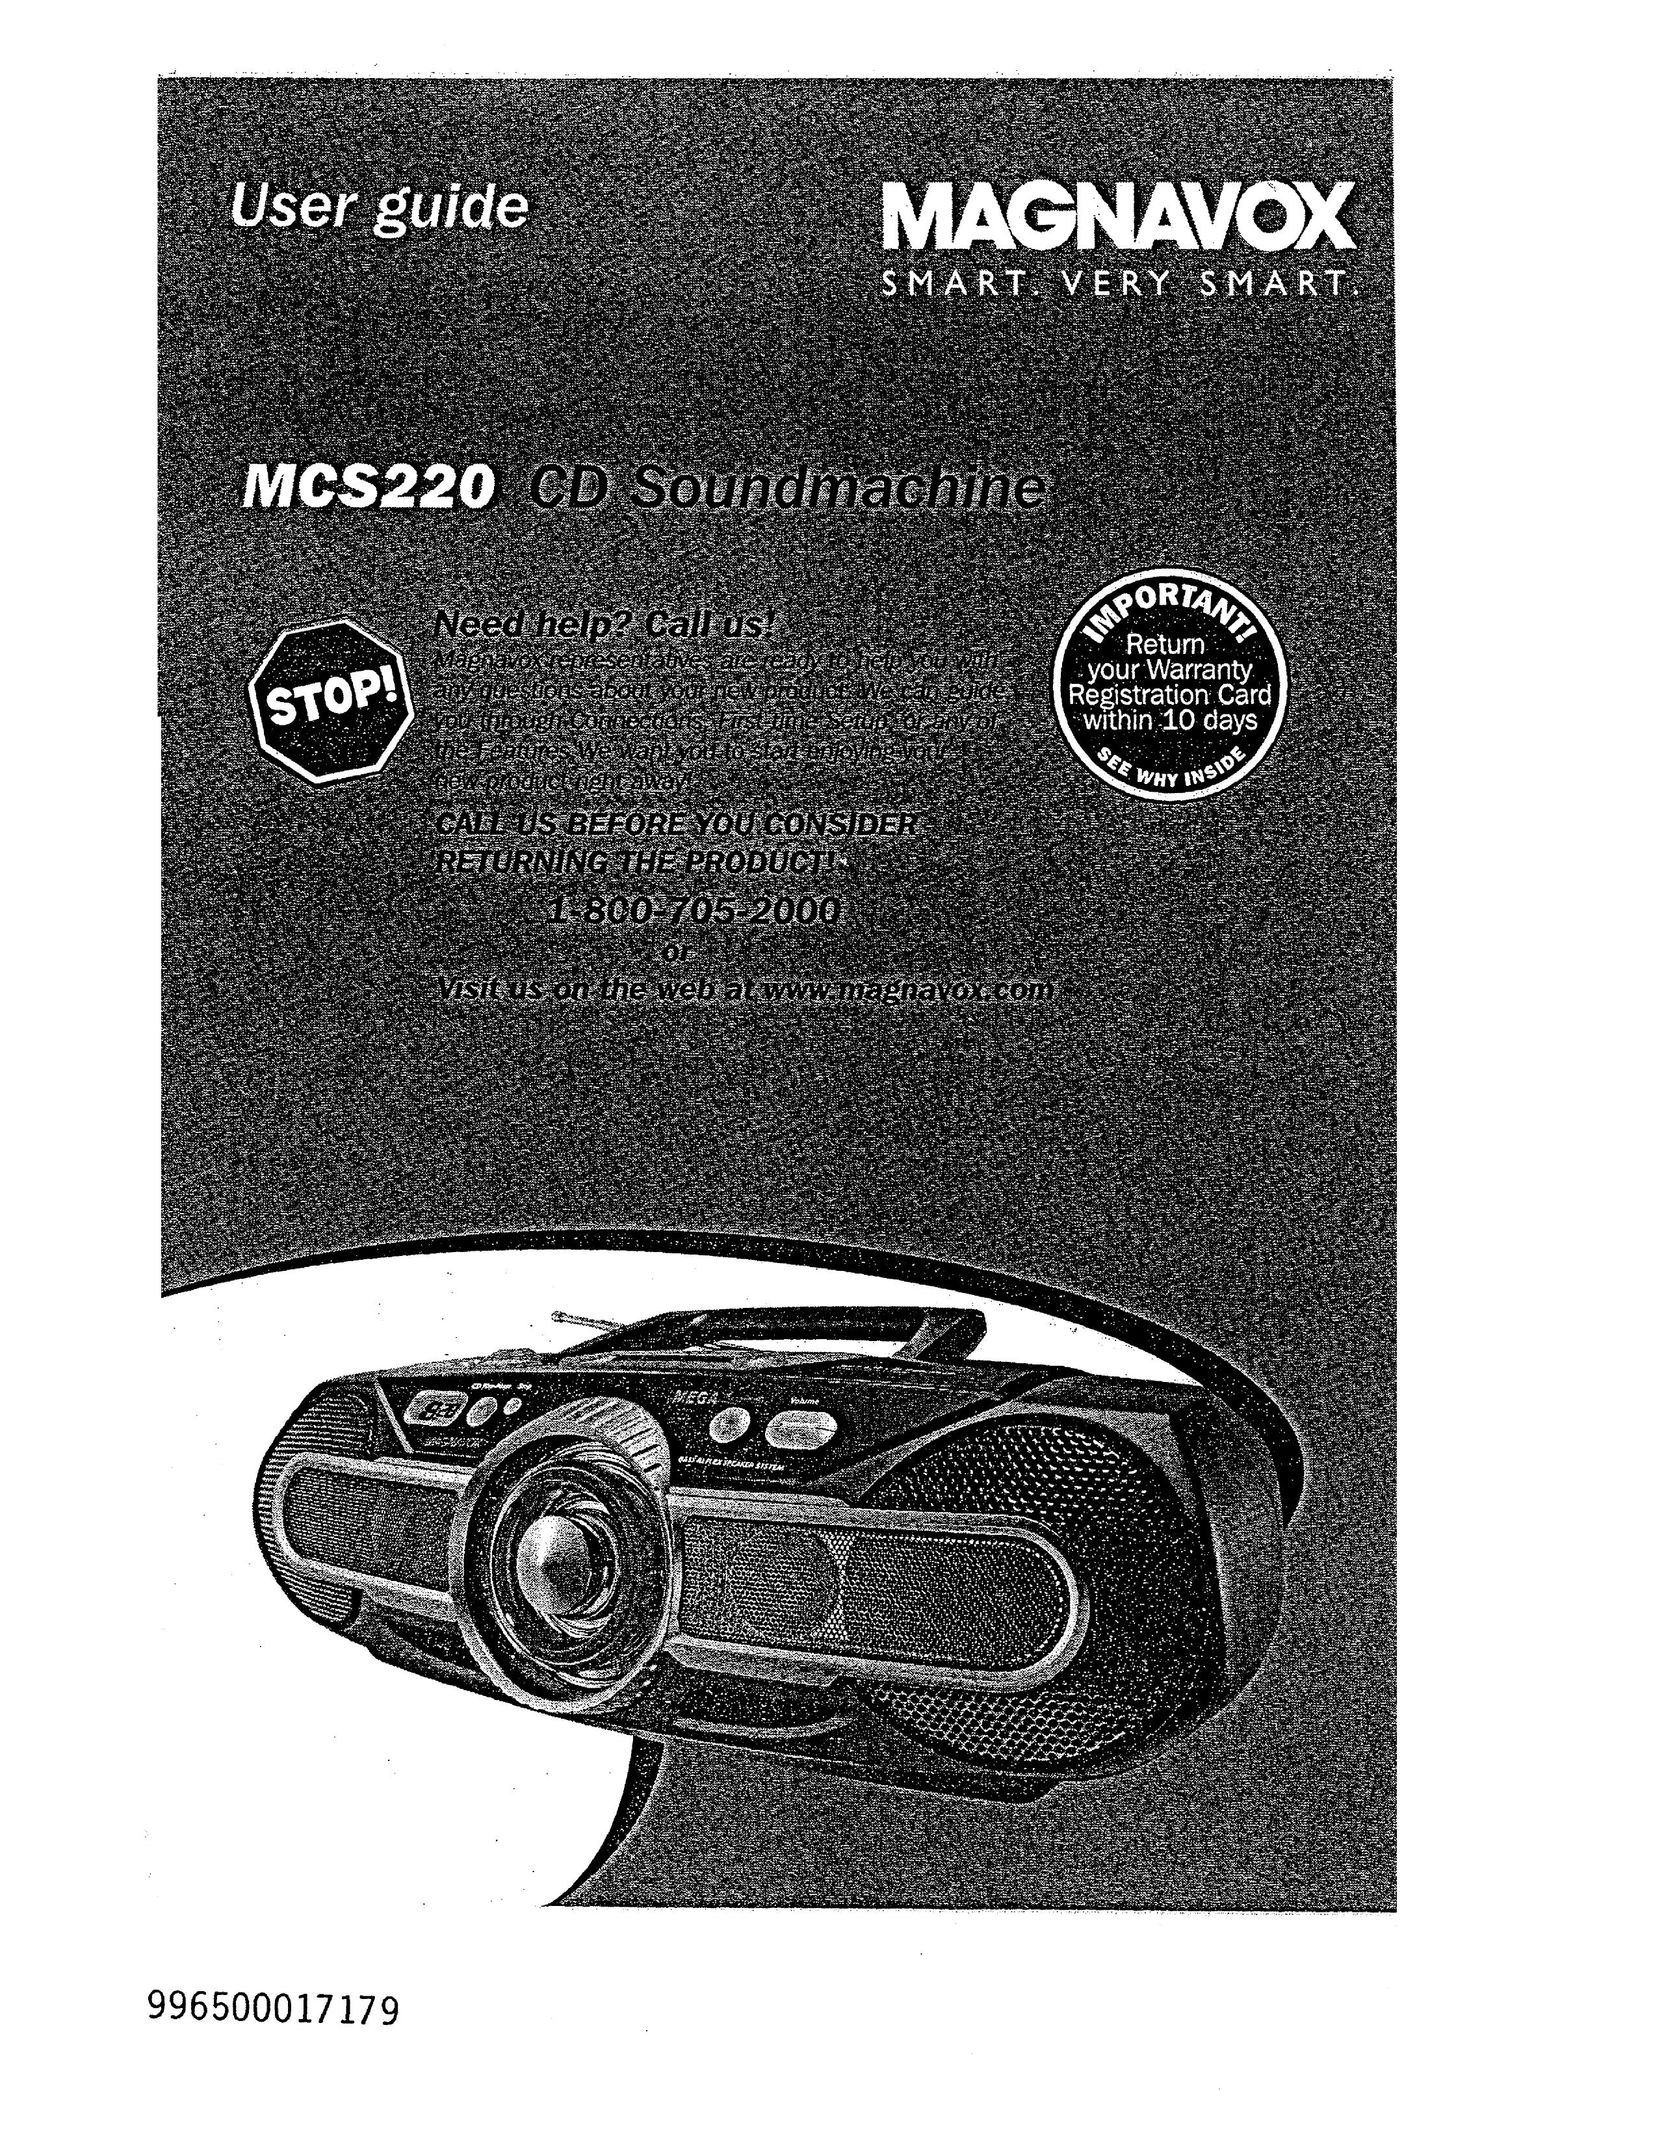 Magnavox MCS220 CD Player User Manual